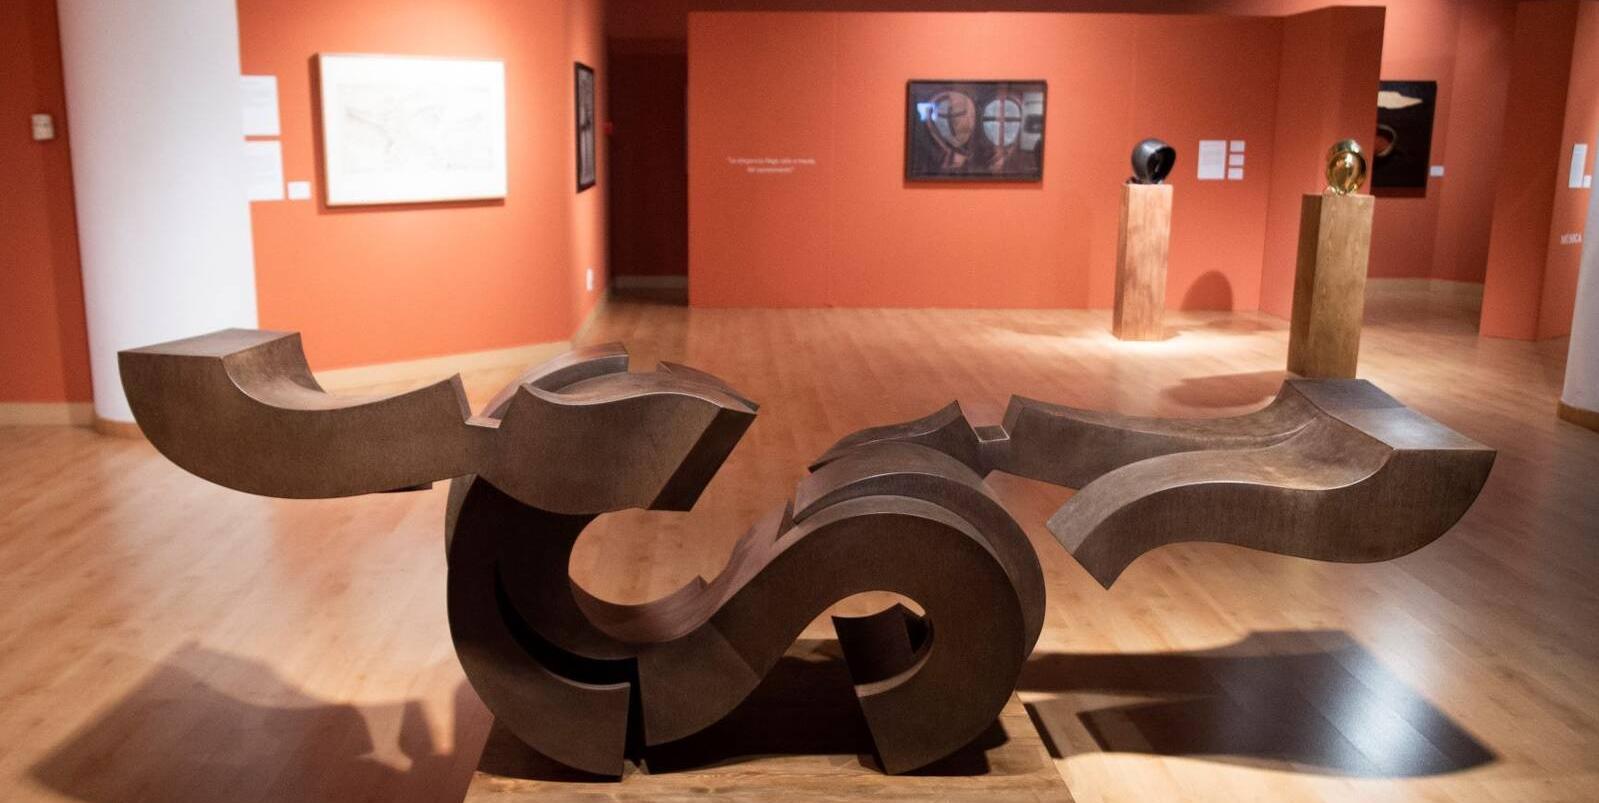 Visita la exposición “Martín Chirino. Sin pasión no hay vida” instalada en el MIRA, también de forma virtual